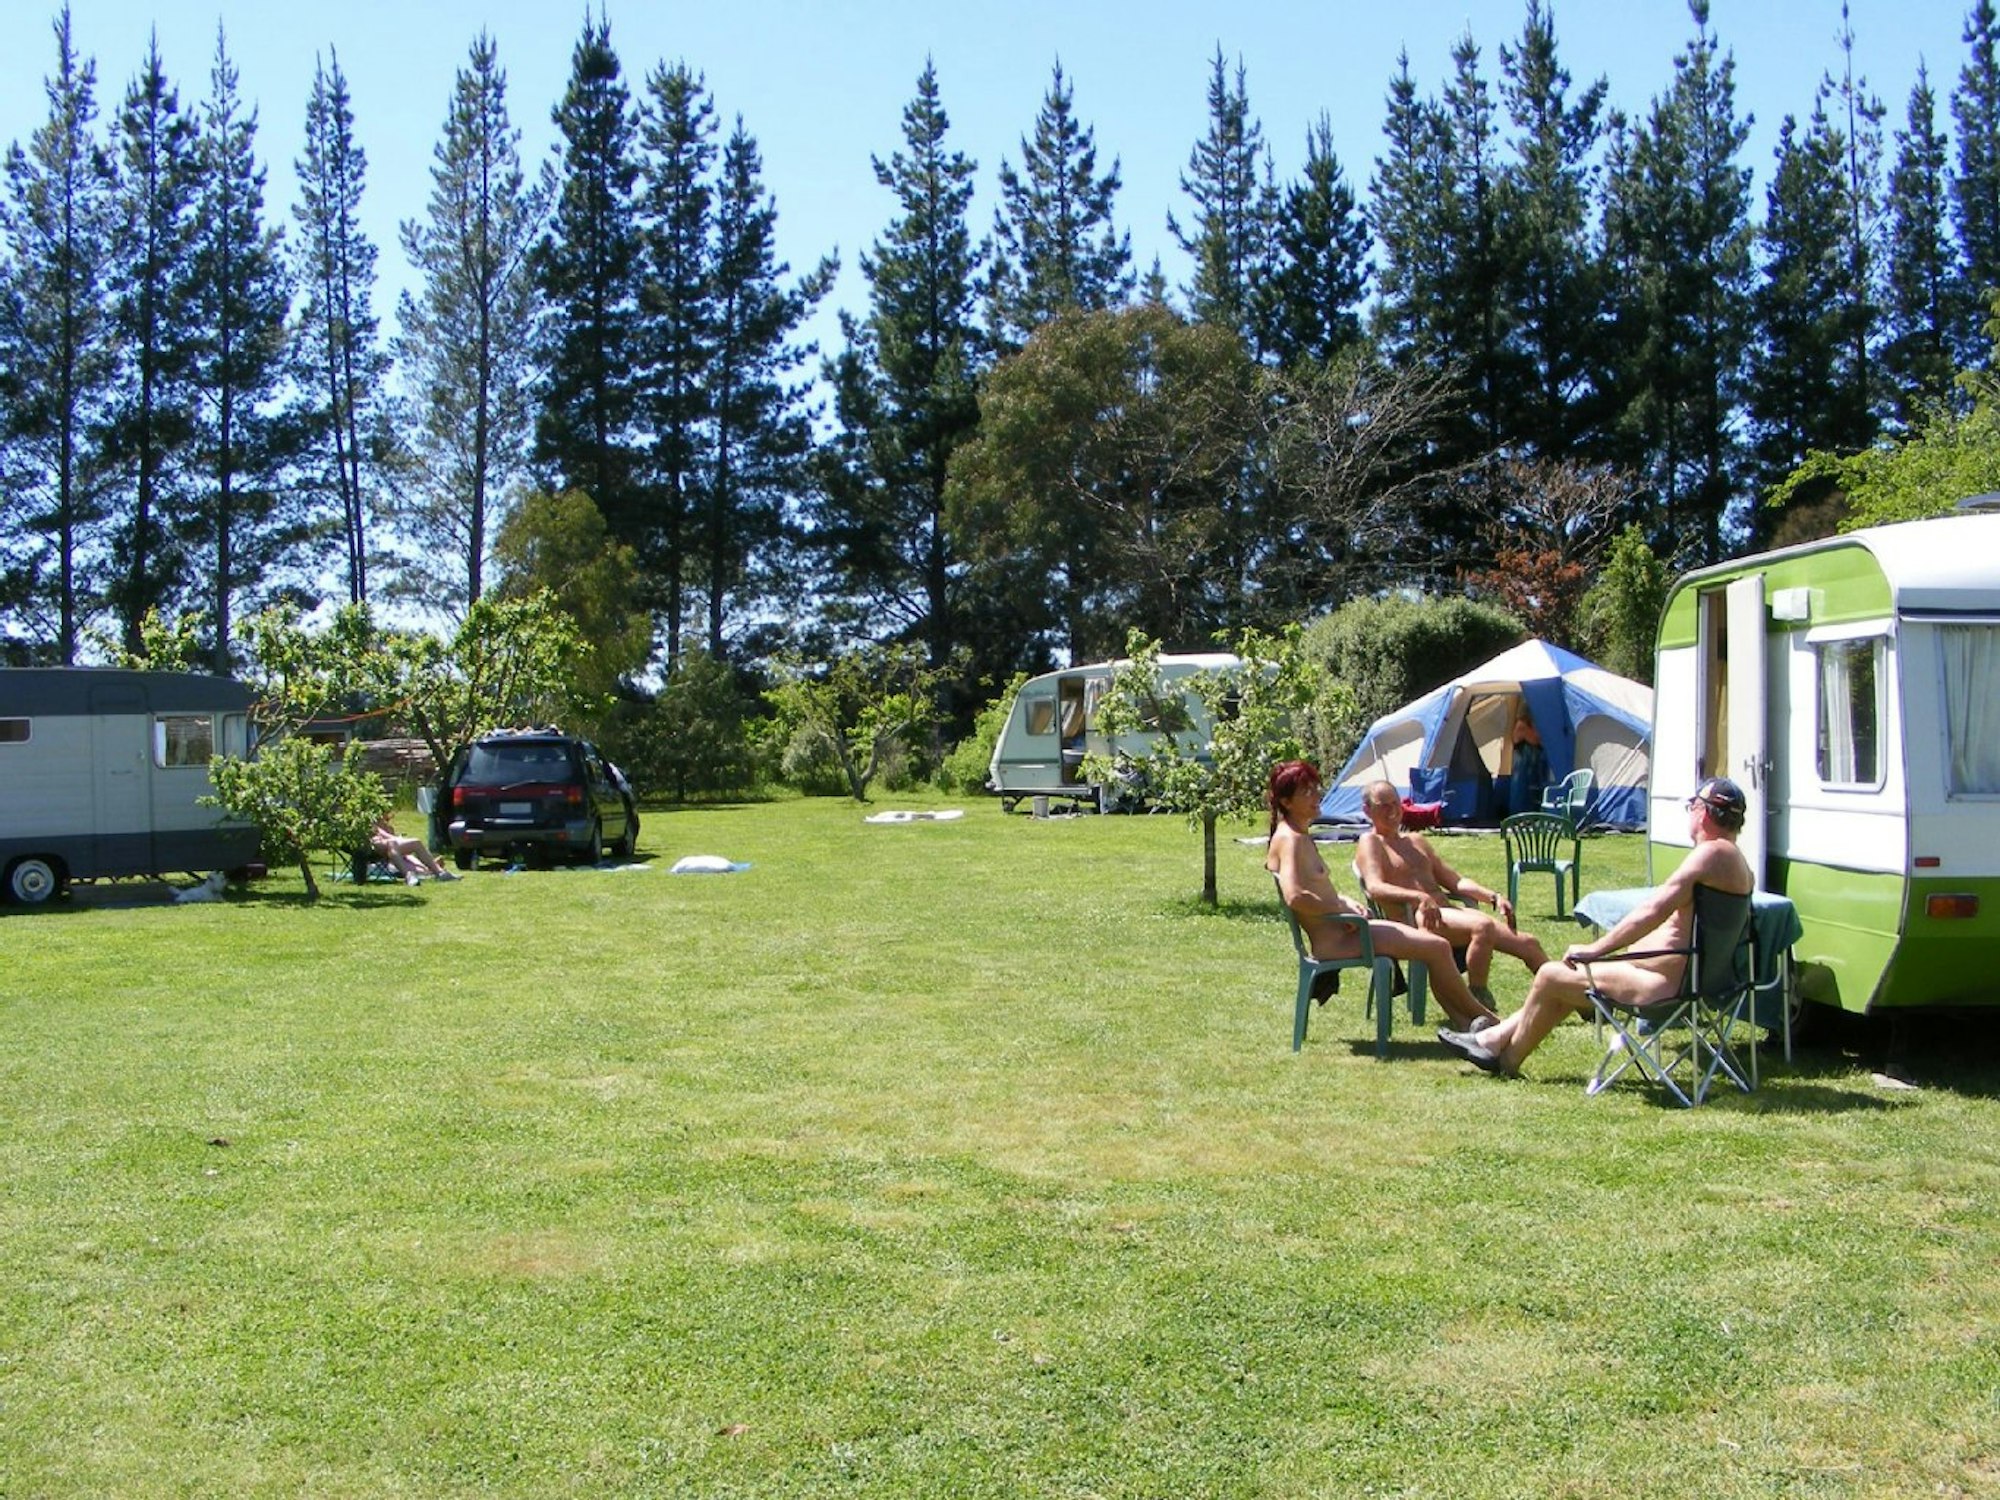 Camping der besonderen Art am anderen Ende der Welt: In Neuseeland liegt der Wai-natur Naturist Park.